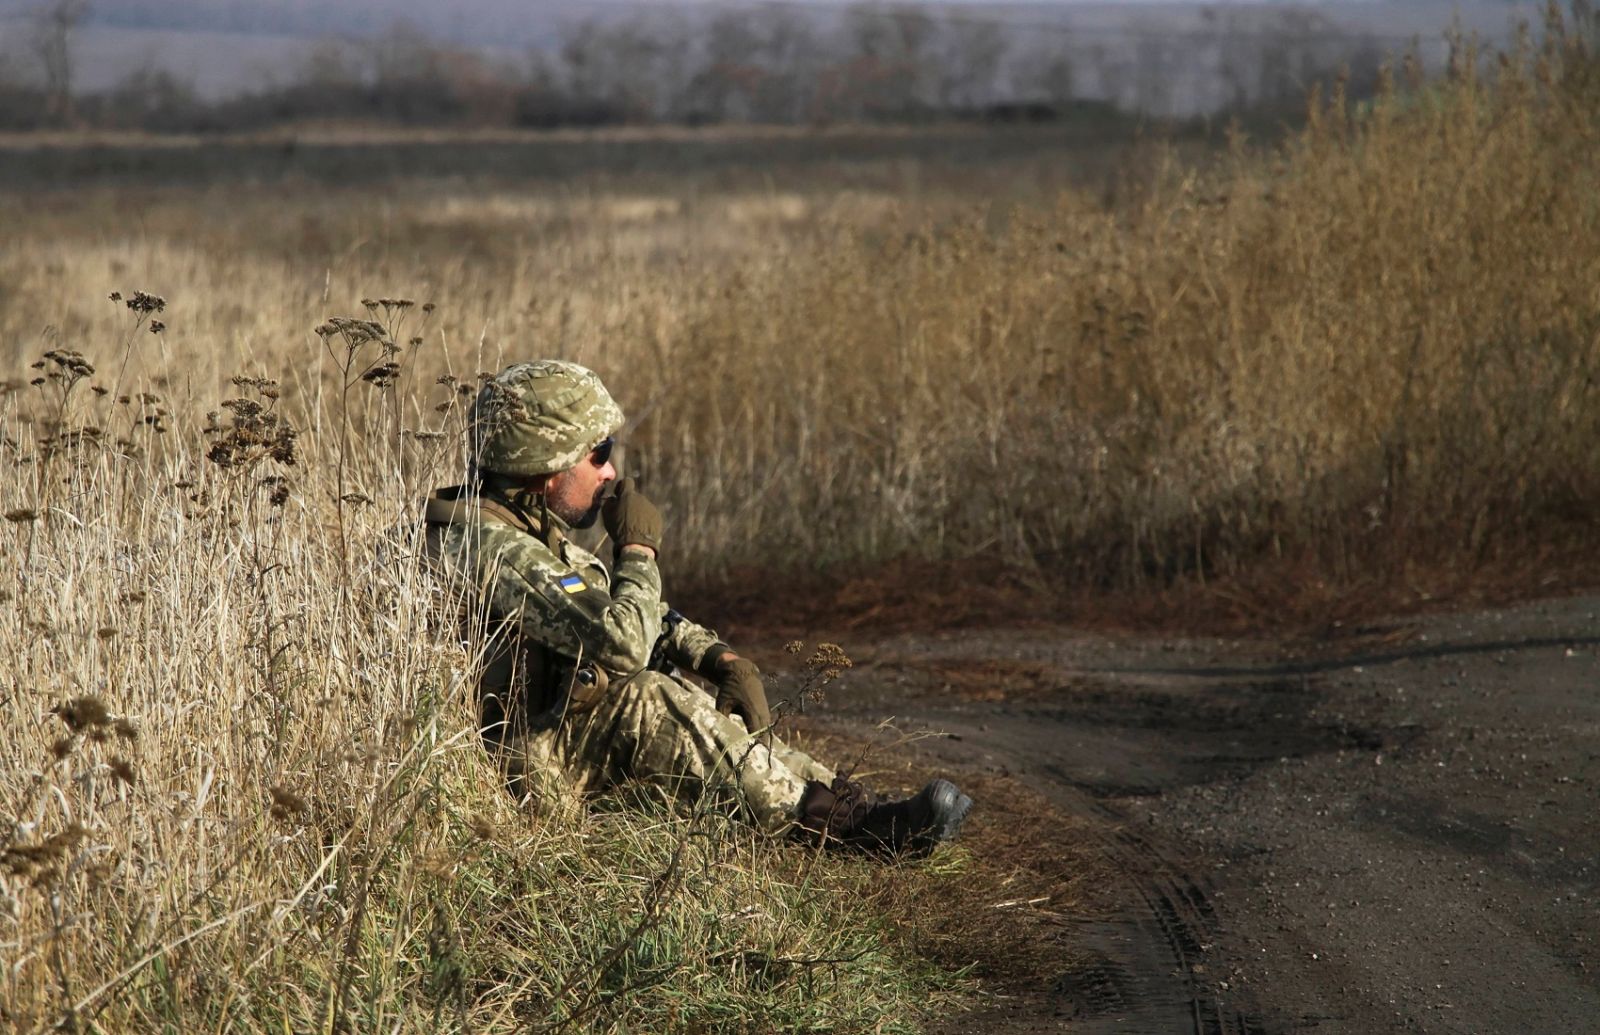 Снєгирьов: Не варто поширювати інформацію, що підриває бойовий дух українських військових 